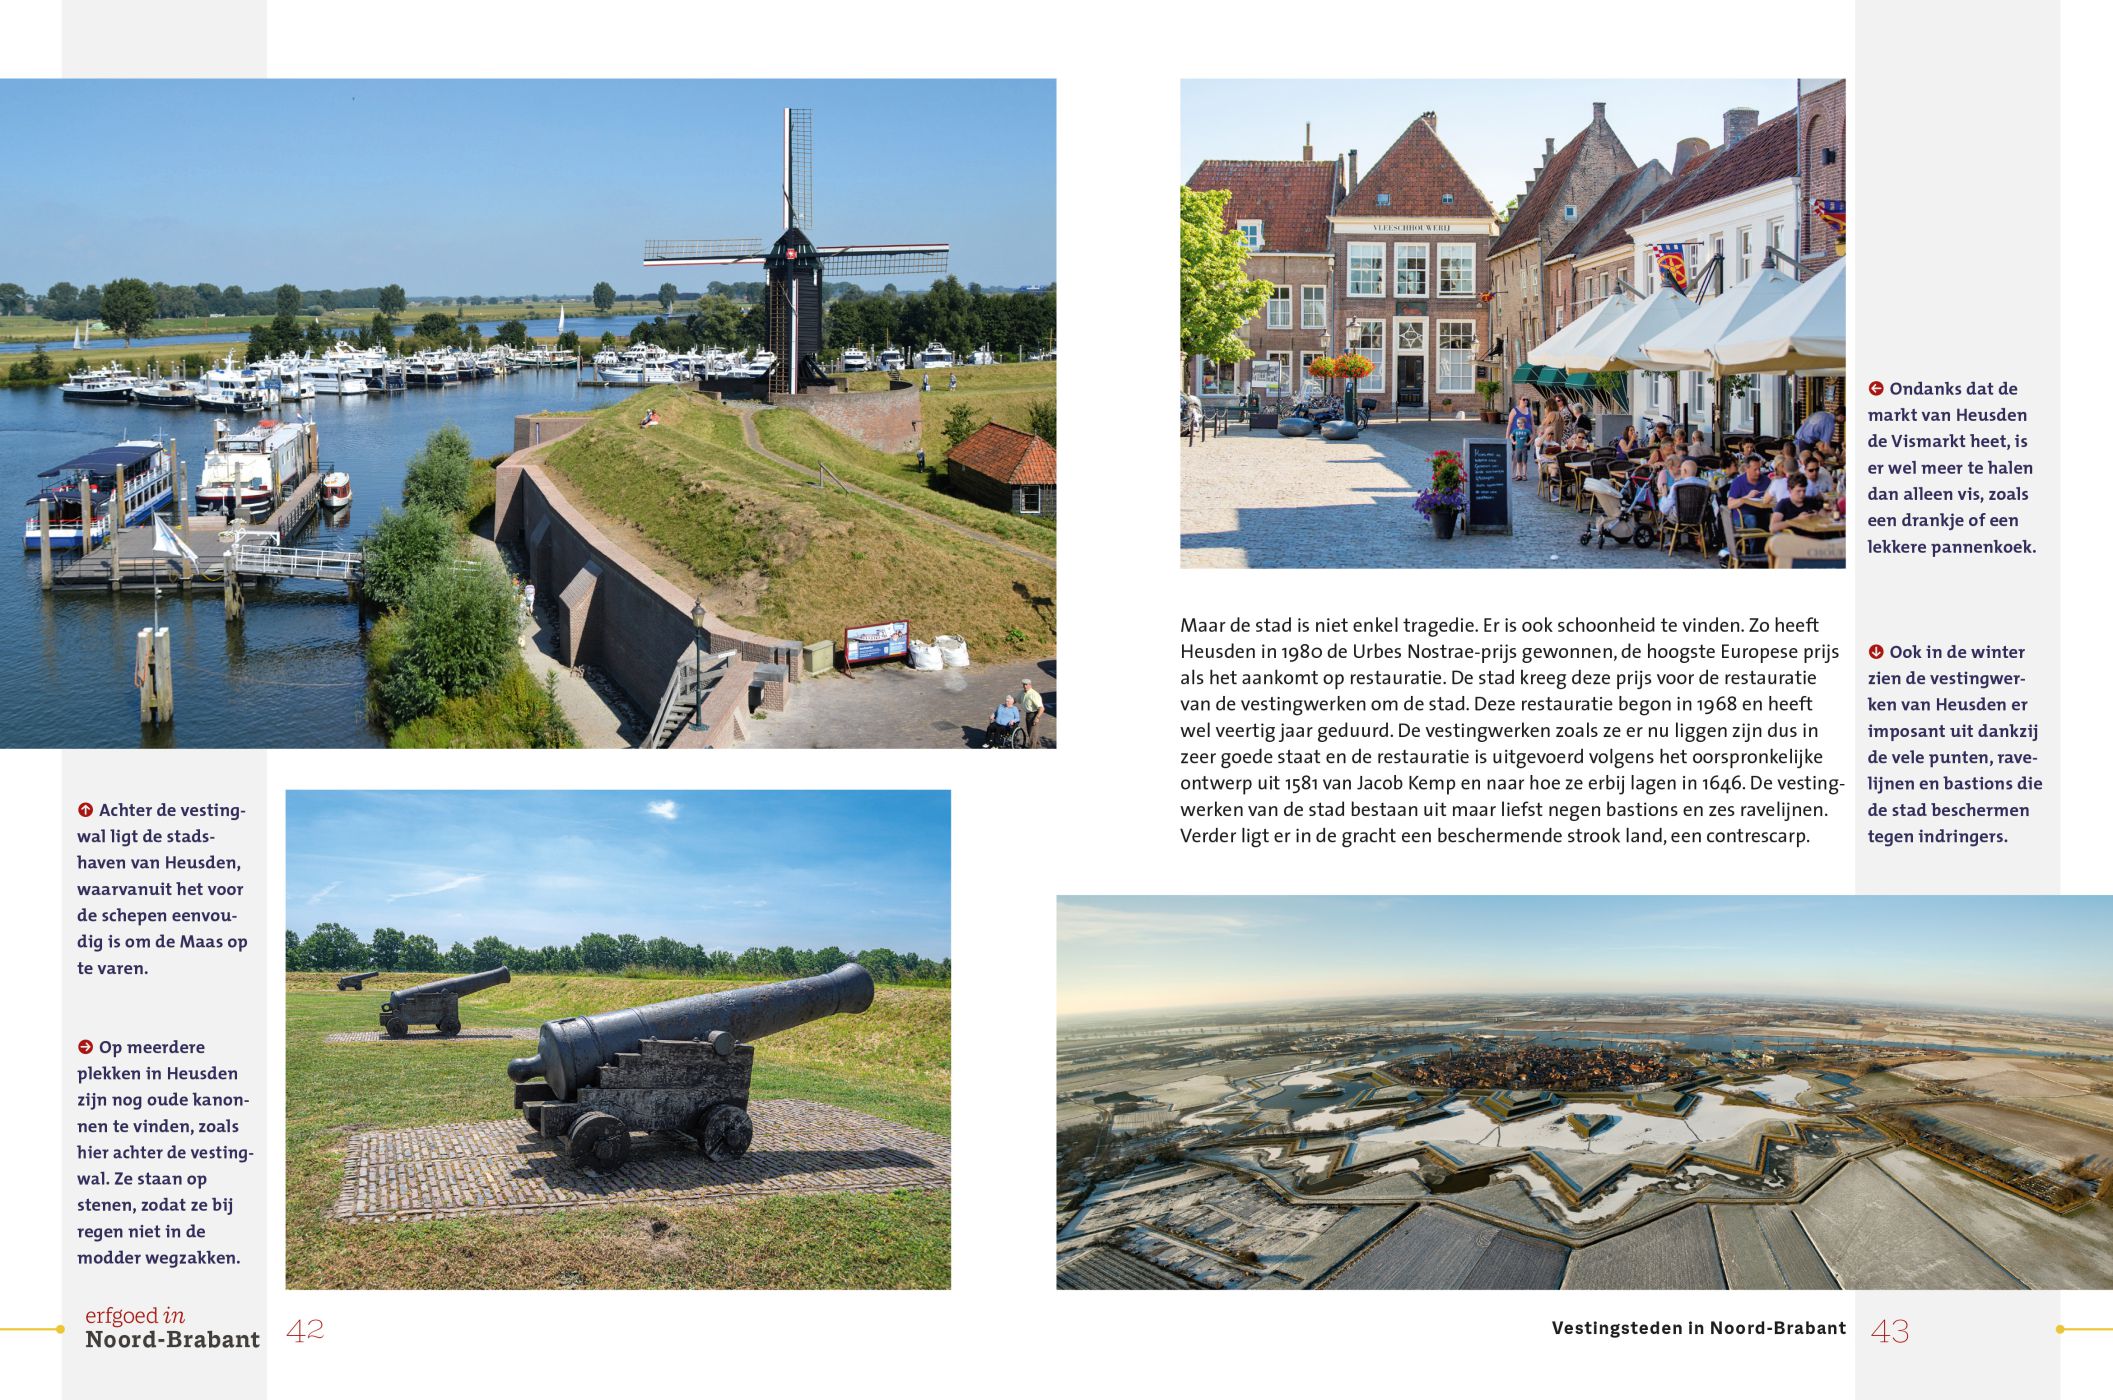 Inkijkexemplaar van het boek: <em>Erfgoed in Noord-Brabant. Vestingsteden langs de linie</em> - © Uitgeverij Matrijs